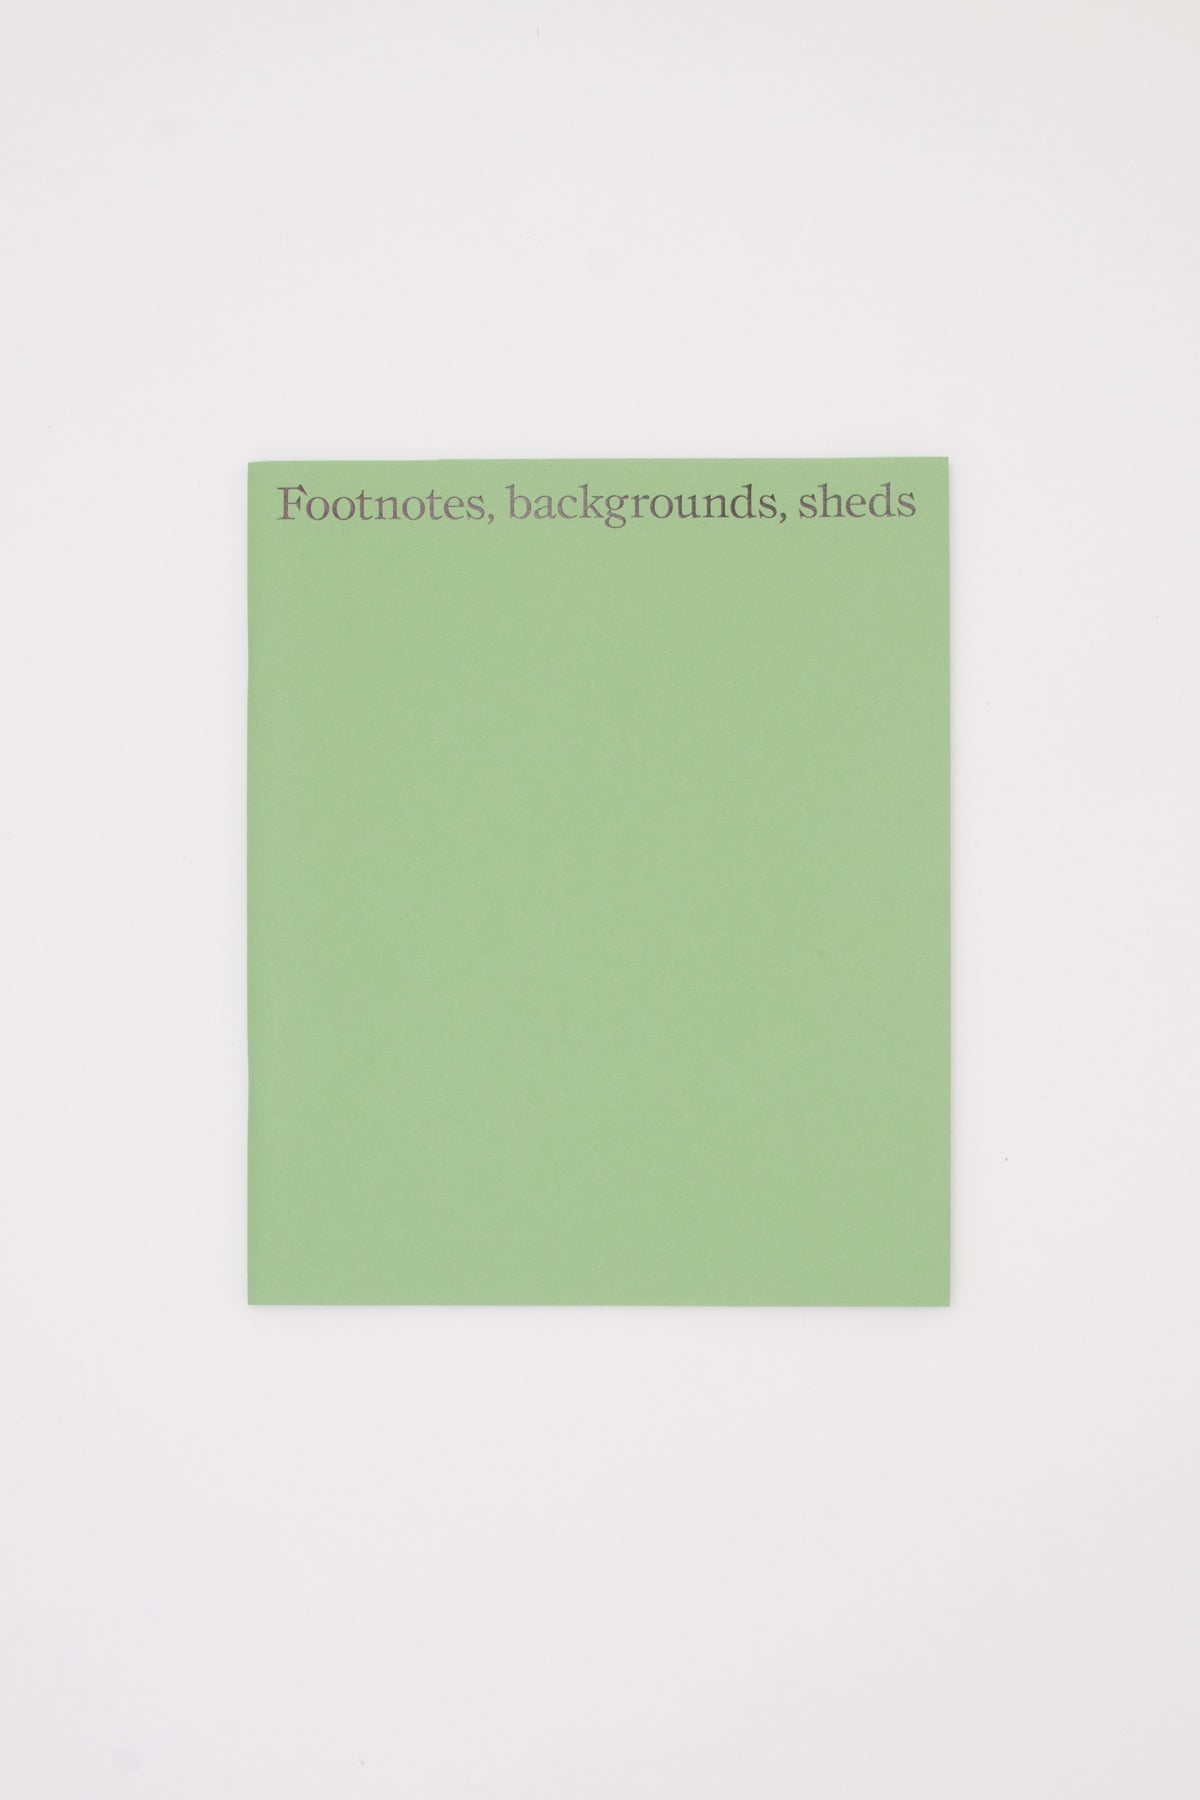 Footnotes, backgrounds, sheds - Hugh Strange, Max Creasy & Elizabeth Hatz